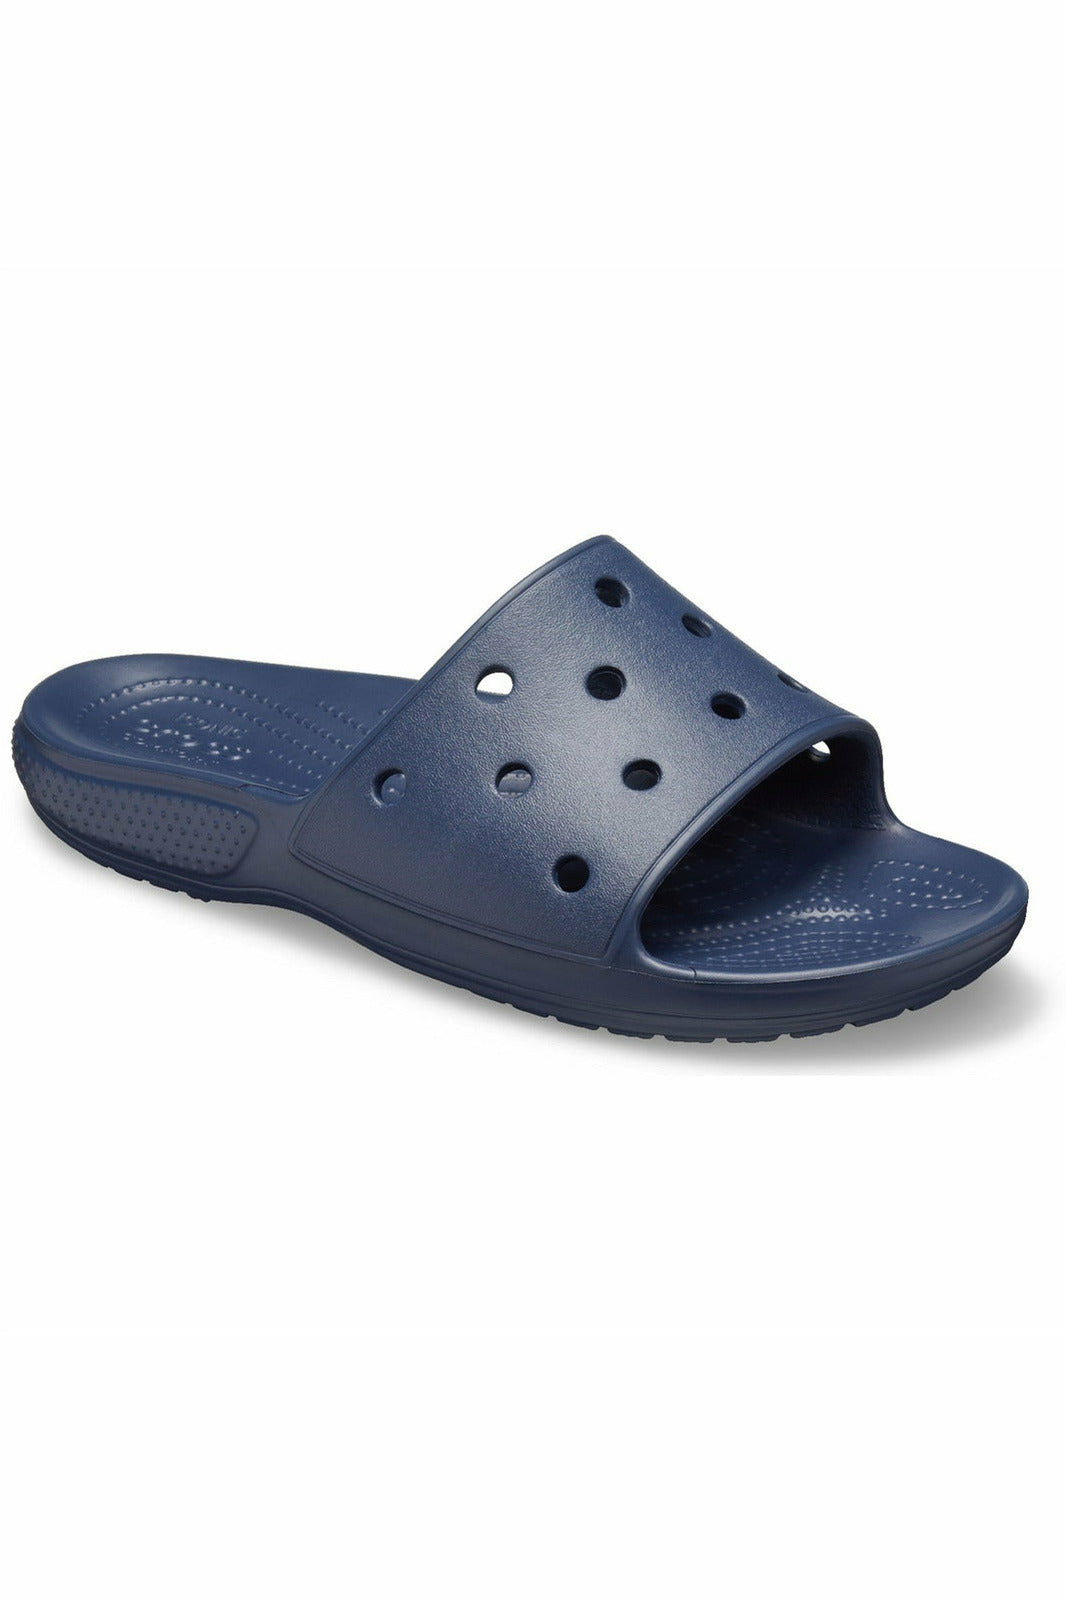 Crocs - Classic Crocs Slide Unisex